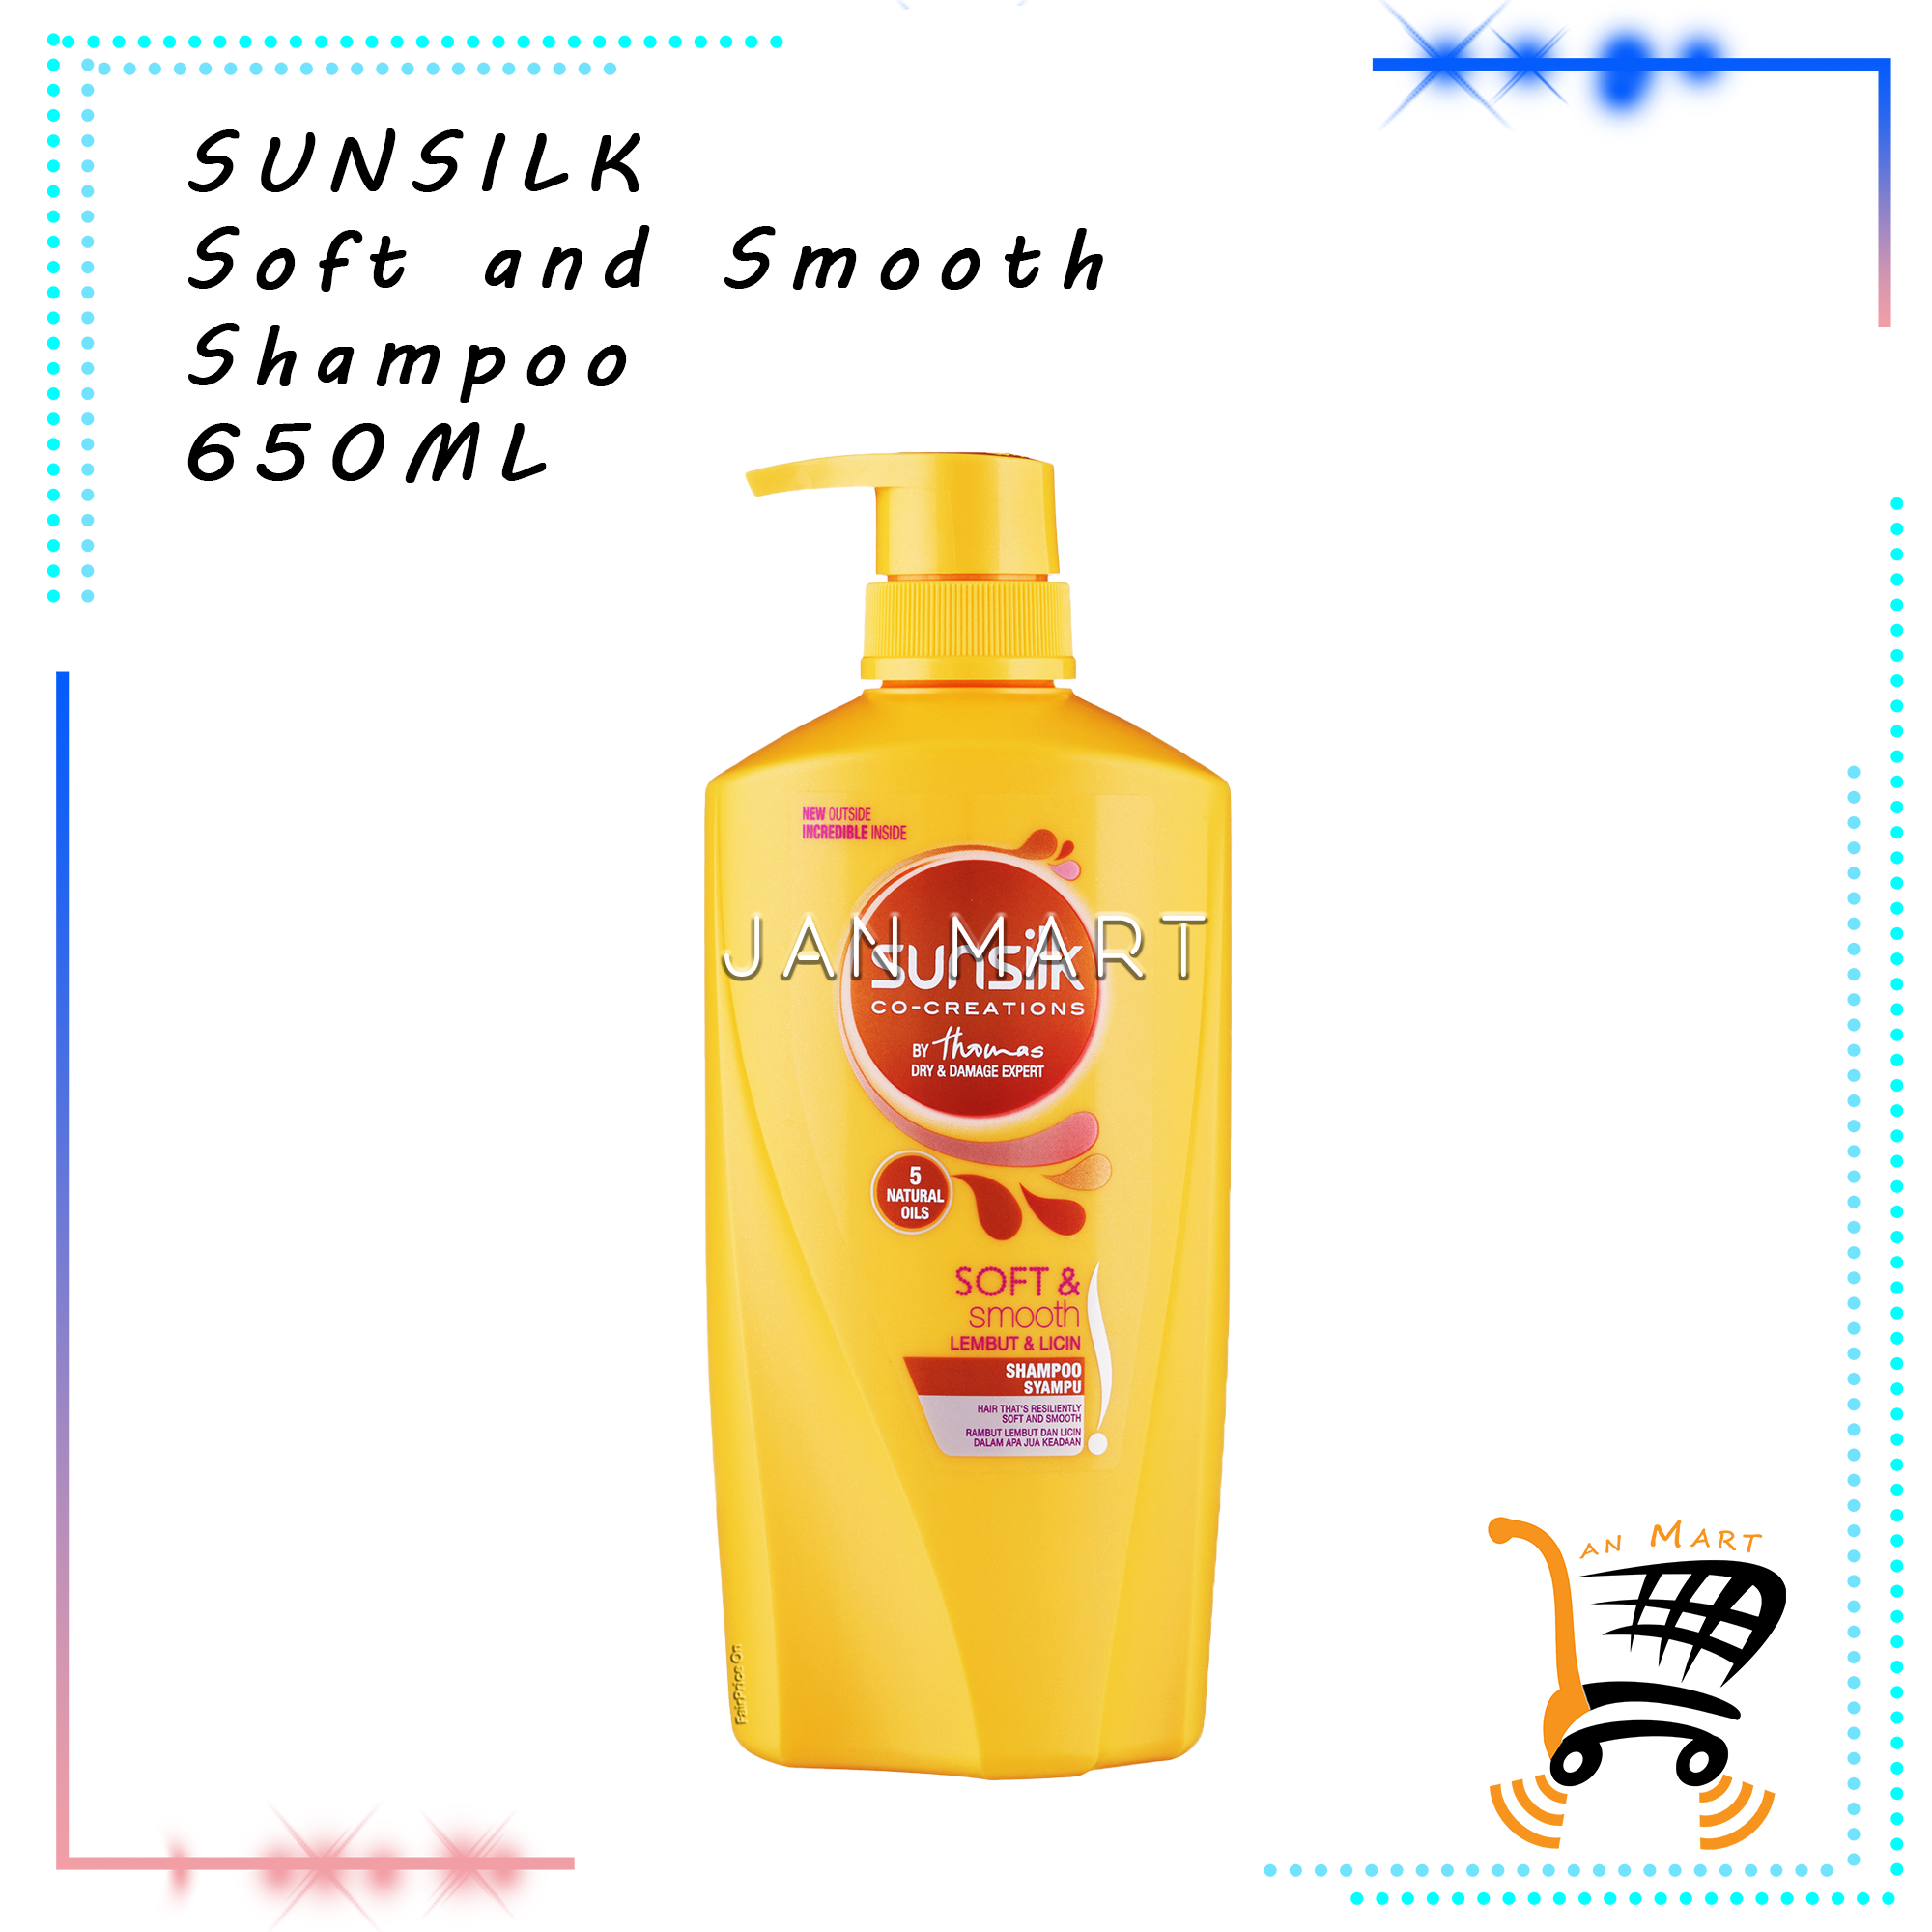 SUNSILK Shampoo 650ML